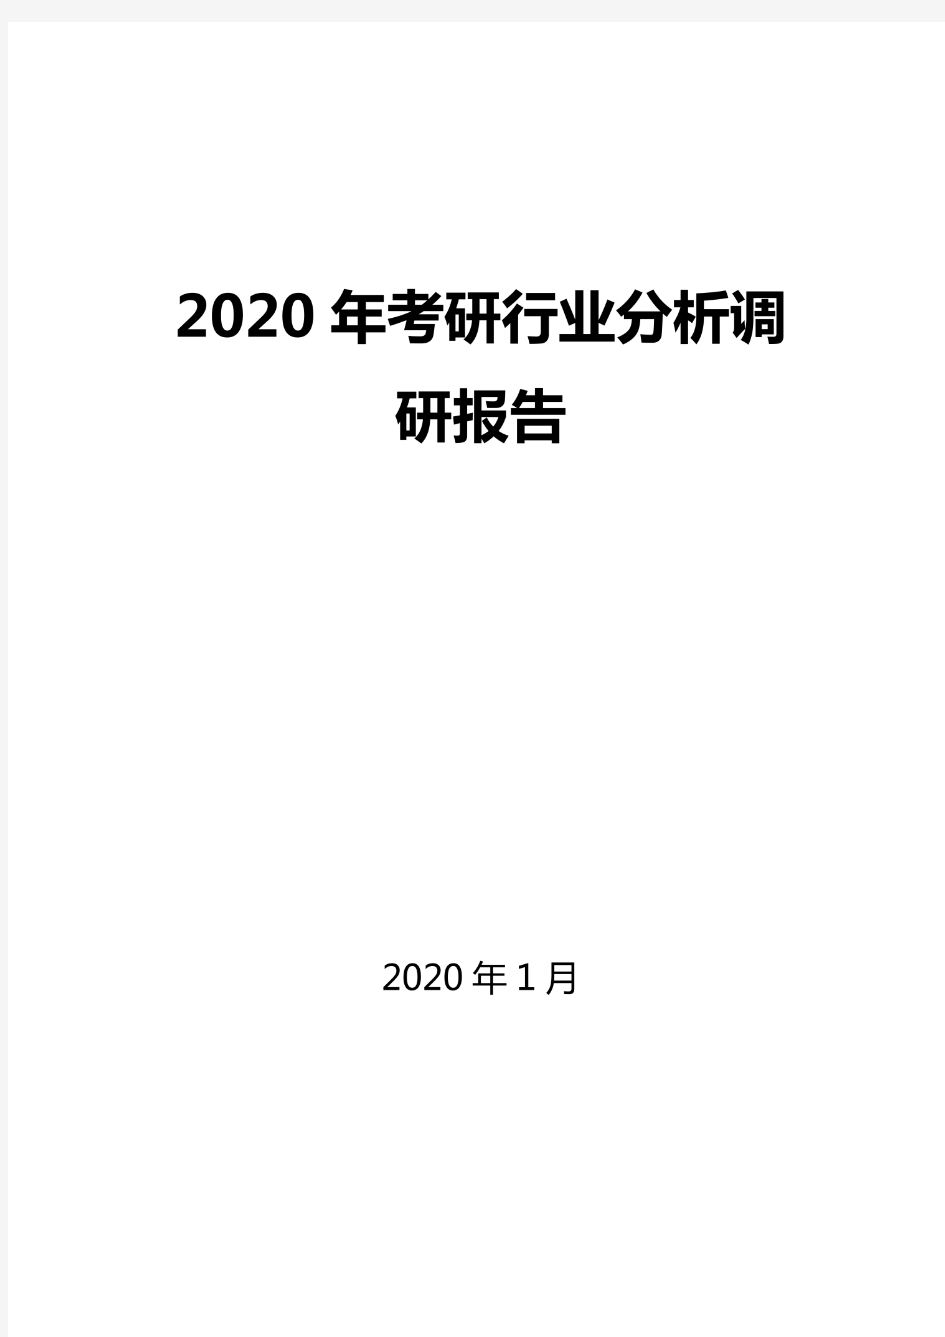 2020考研行业分析调研报告